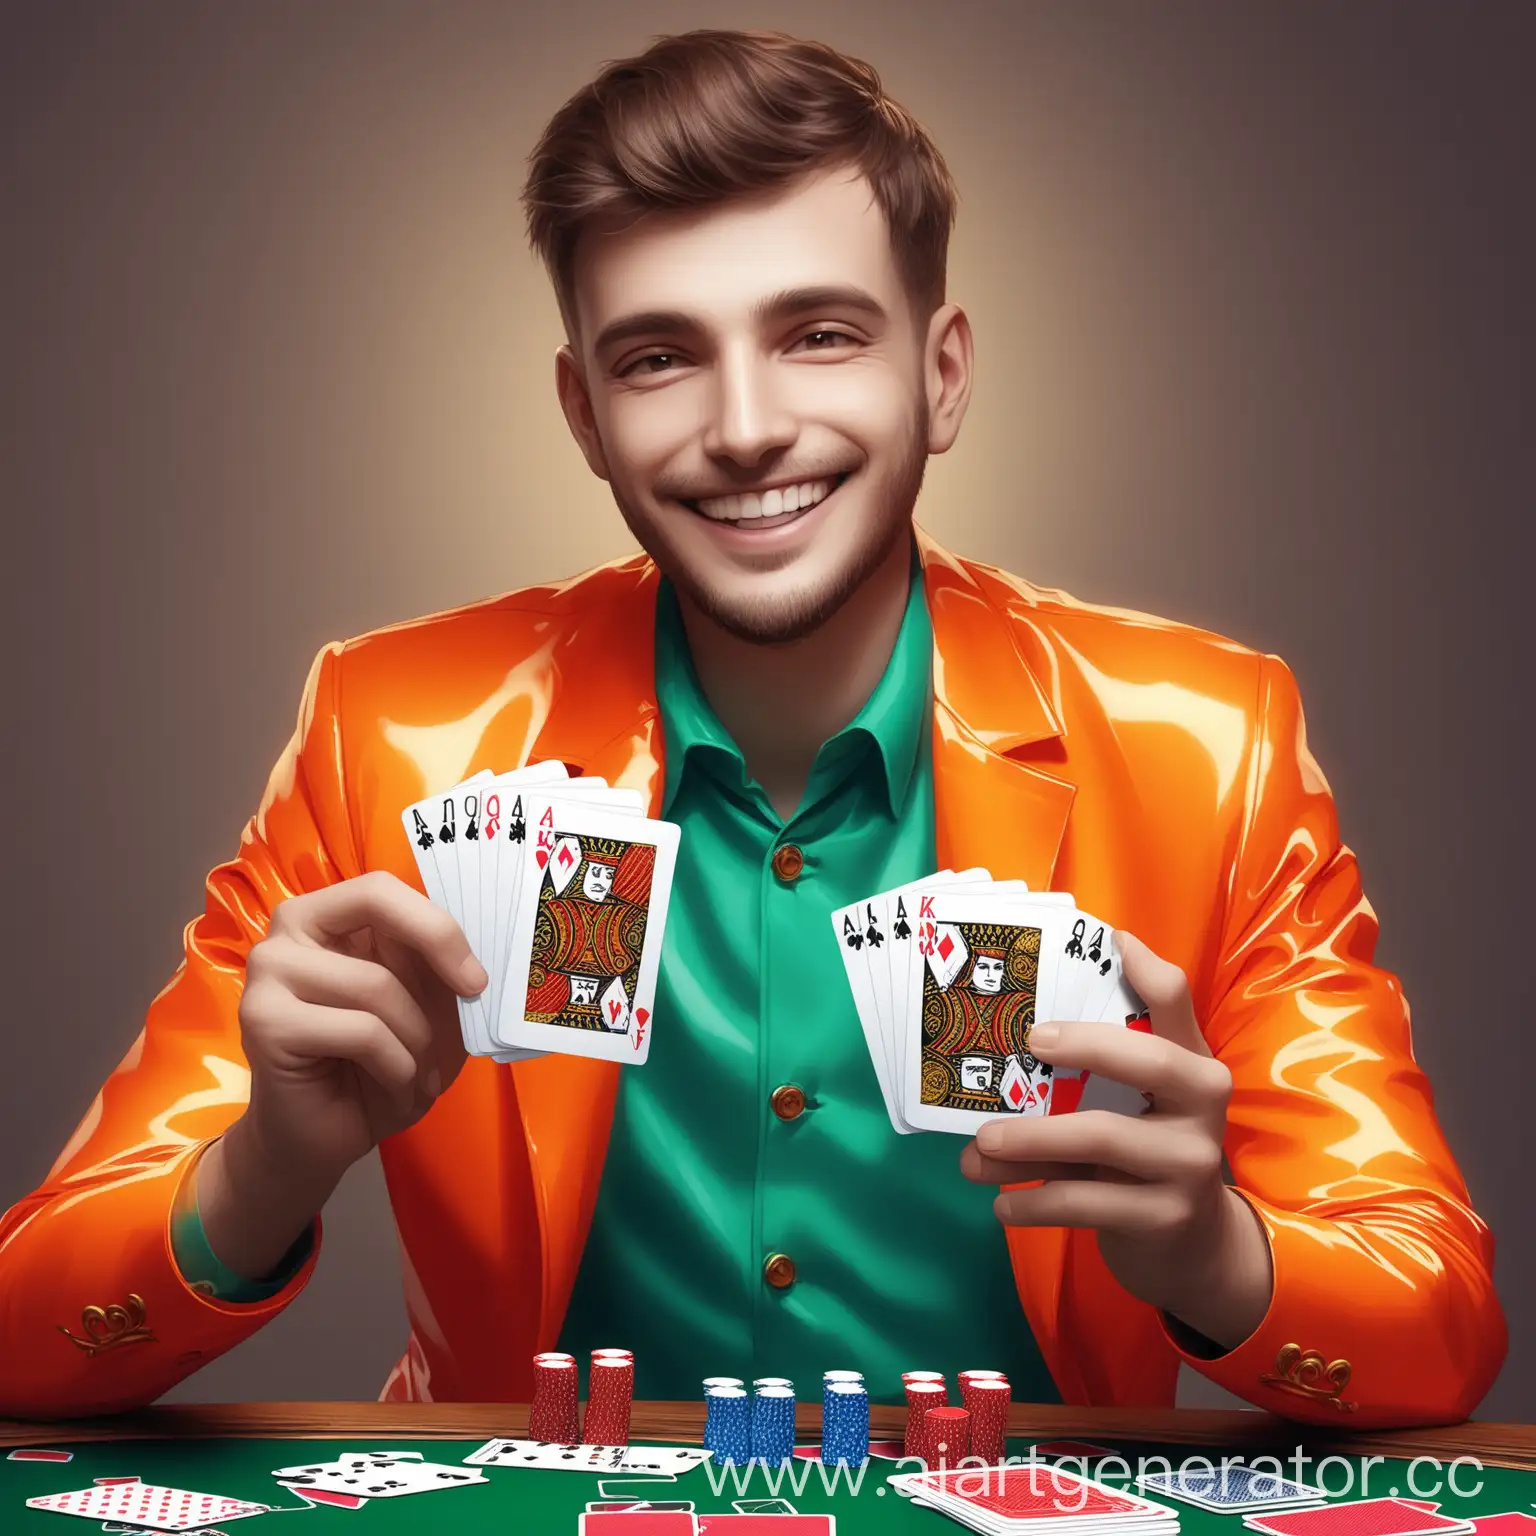 Мужчина в яркой одежде держит в руках игральные карты и улыбается